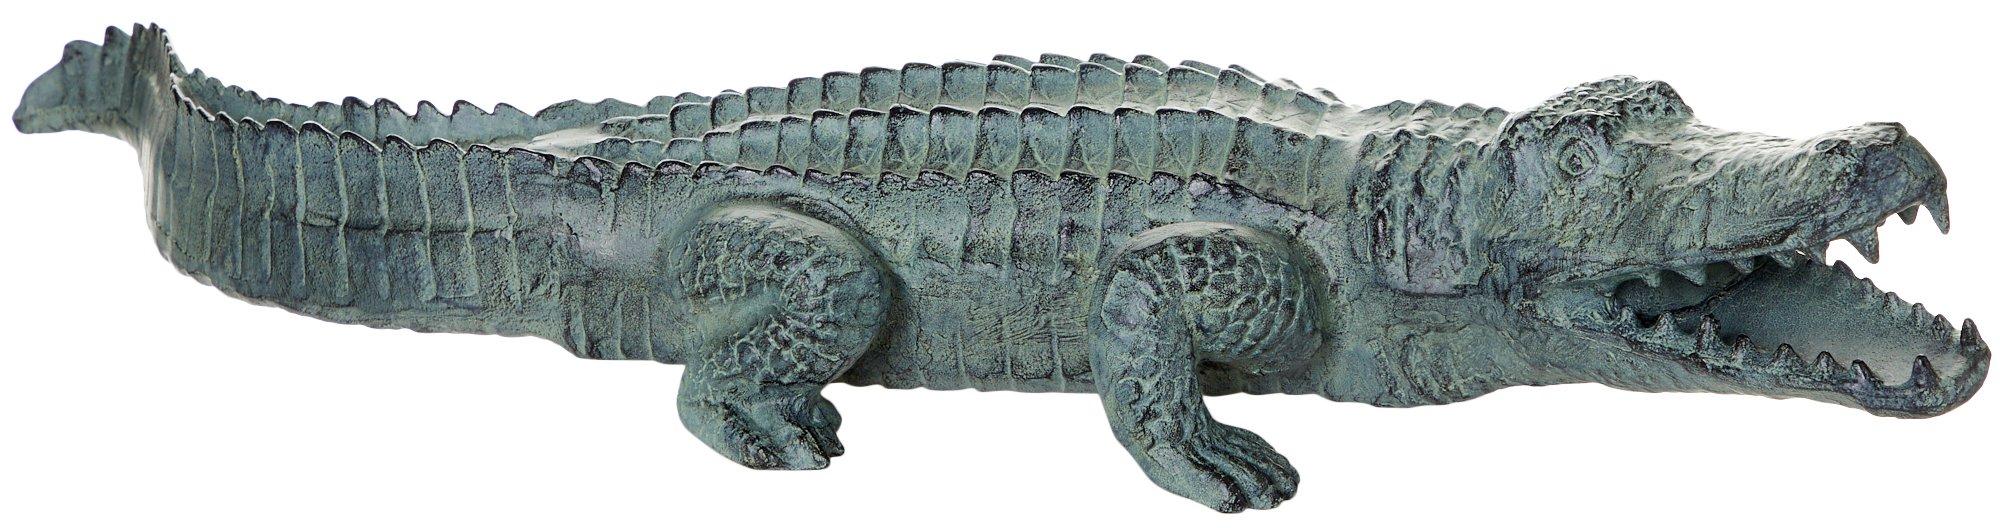 Alligator Sculpture